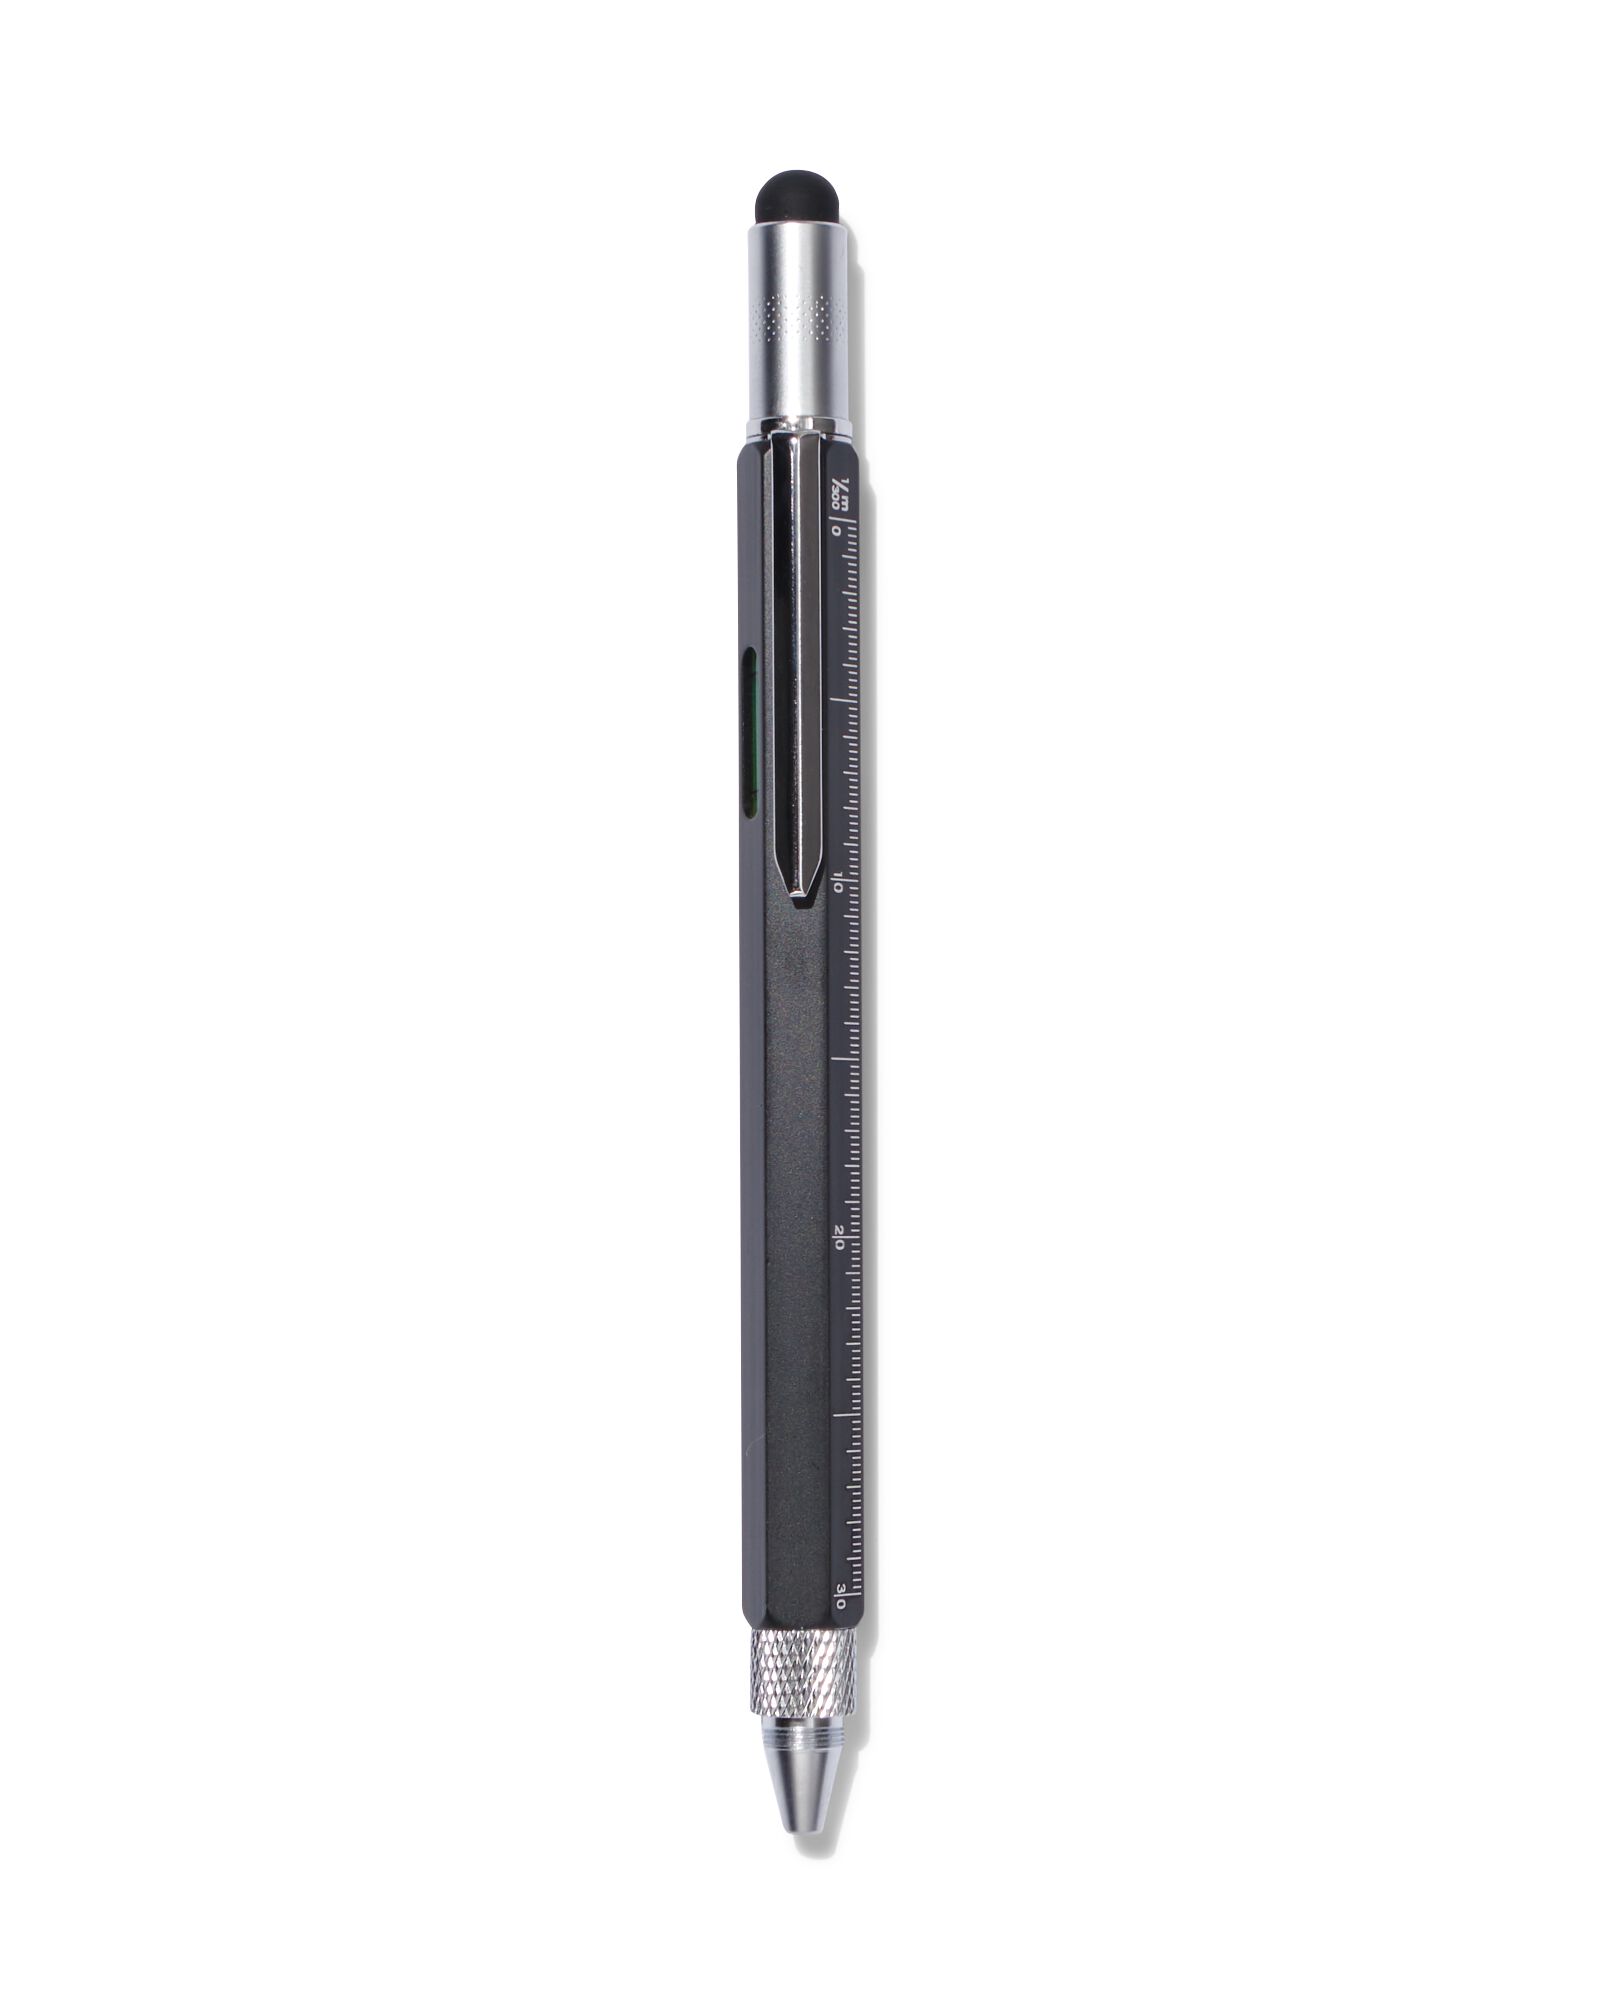 Stylo multifonction 6 en 1 avec stylo à bille, stylet, règle, niveau à  bulle, tournevis cruciforme et plat, chiffon de nettoyage en microfibre de  15 x